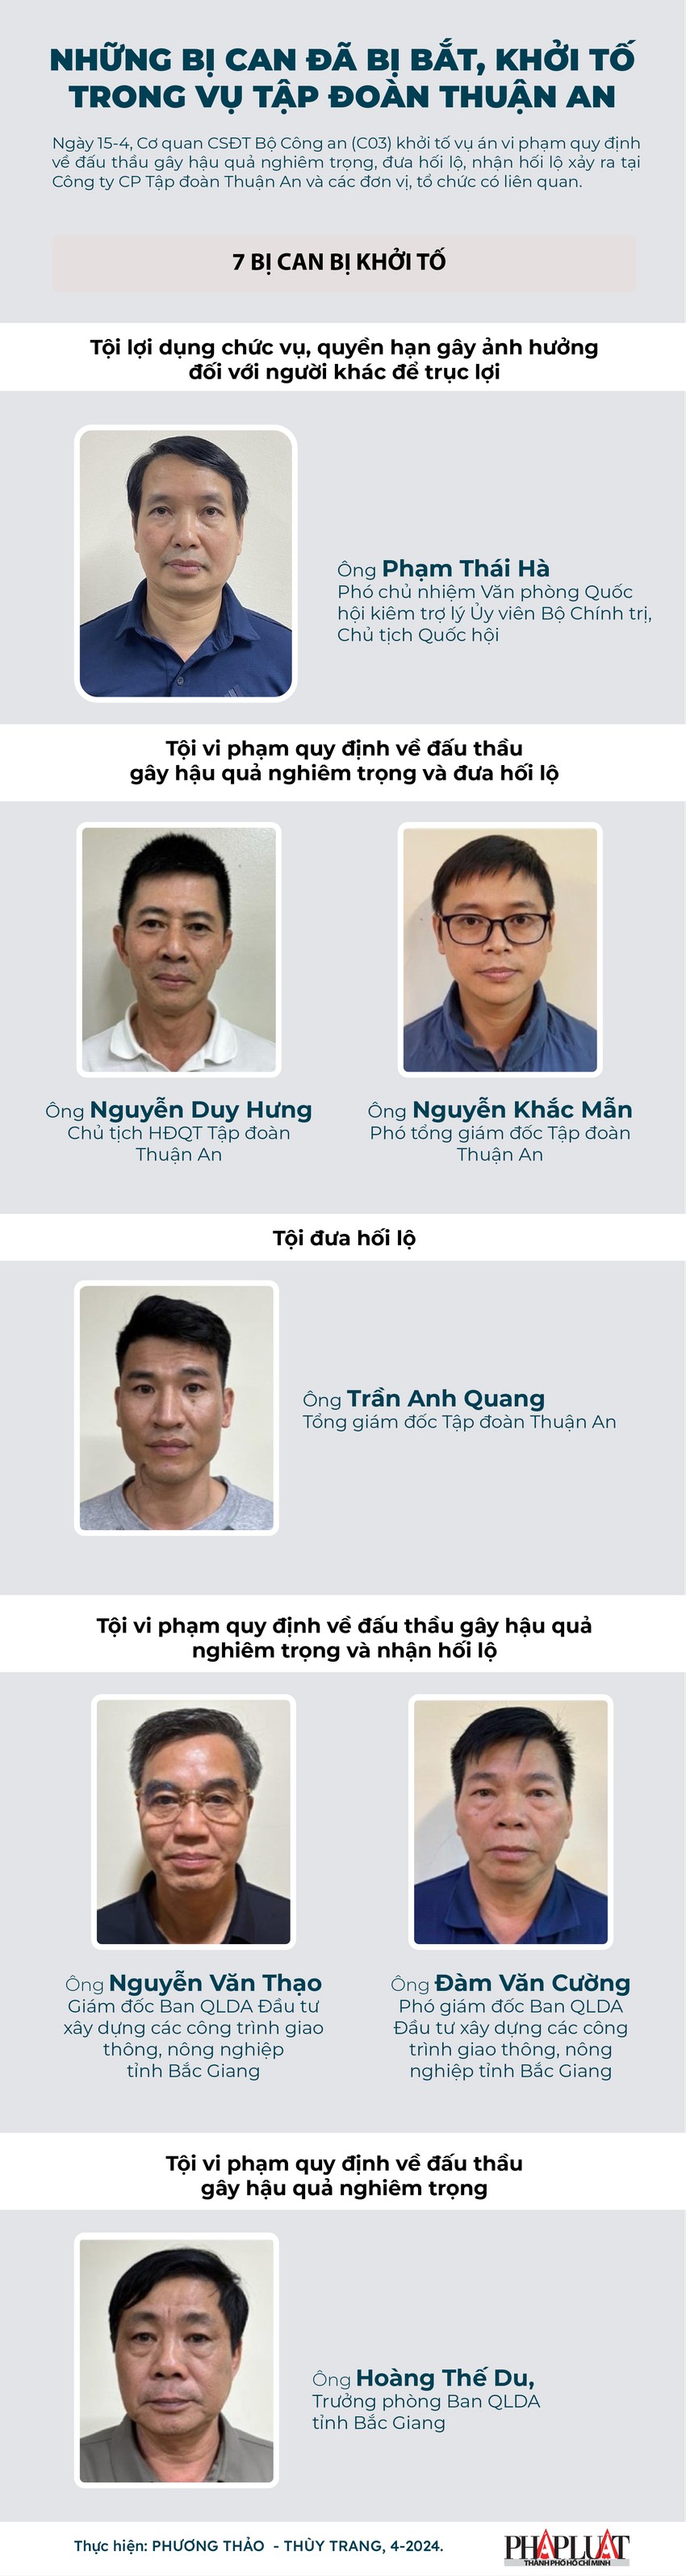 Diễn tiến vụ án Thuận An đến thời điểm ông Phạm Thái Hà bị bắt - 3